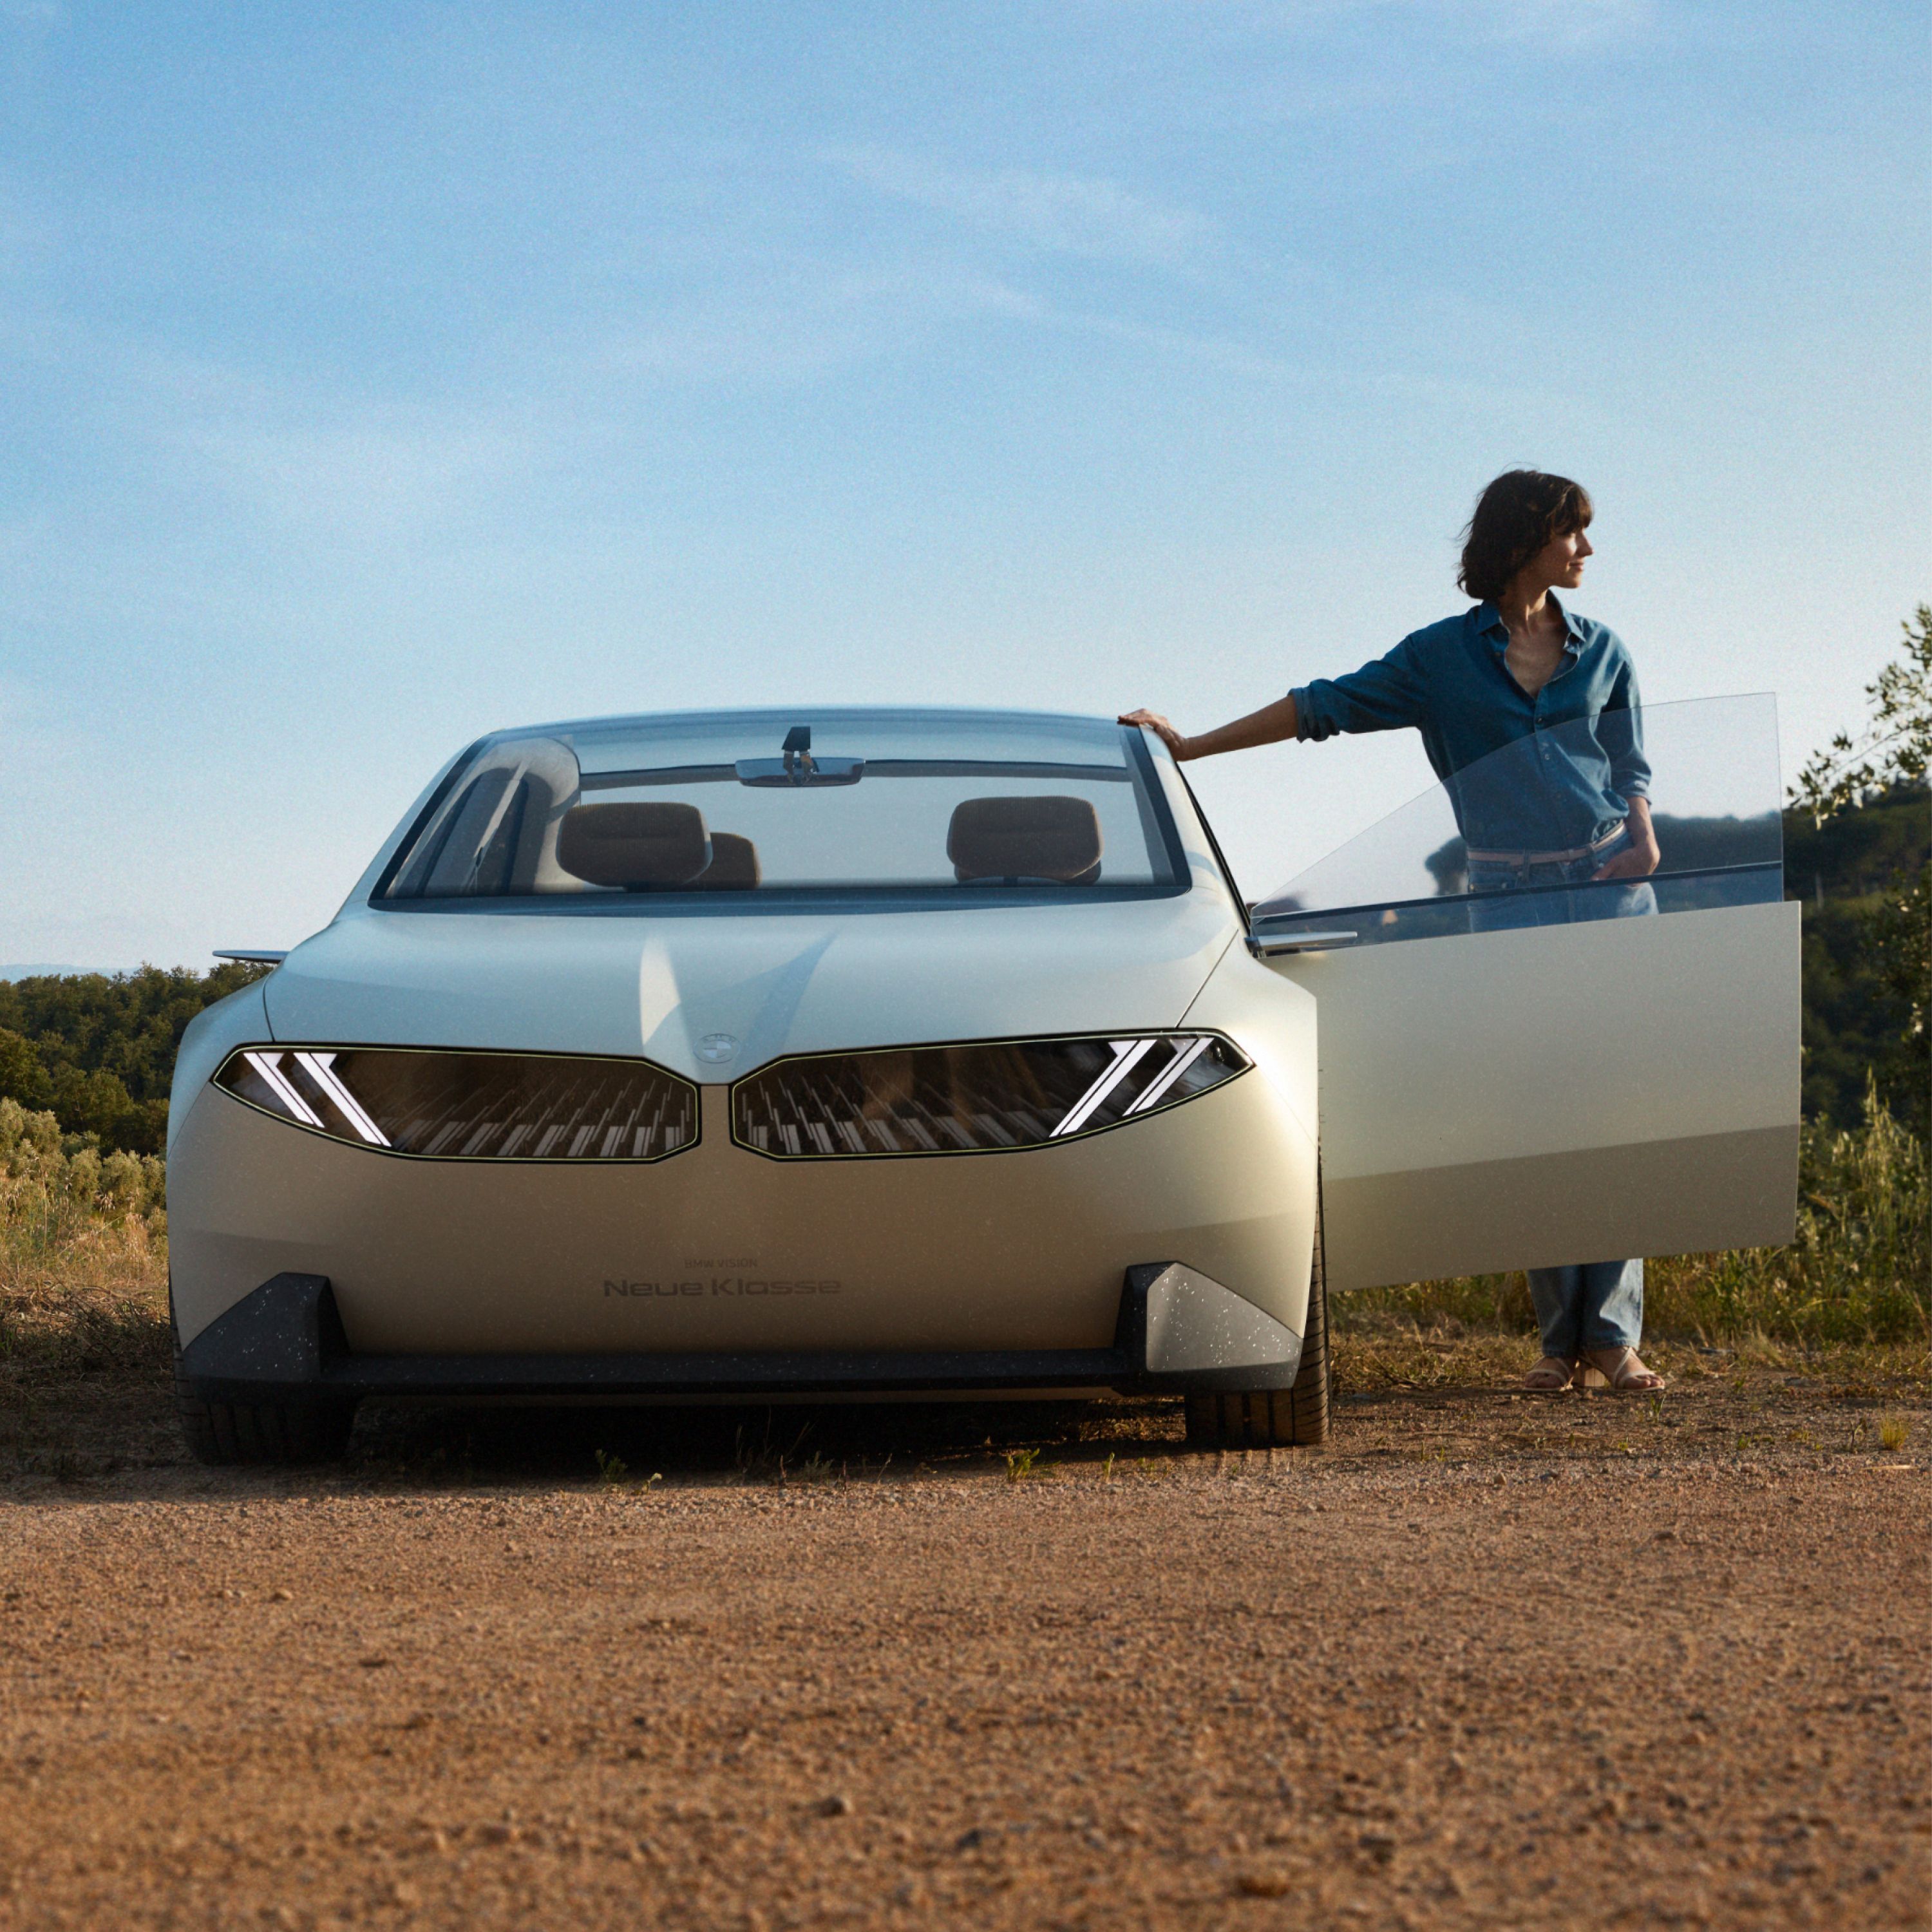 BMW Vision Neue Klasse, prototipo 2023, exterior, vista frontal, aparcado en el desierto, puerta abierta, con mujer